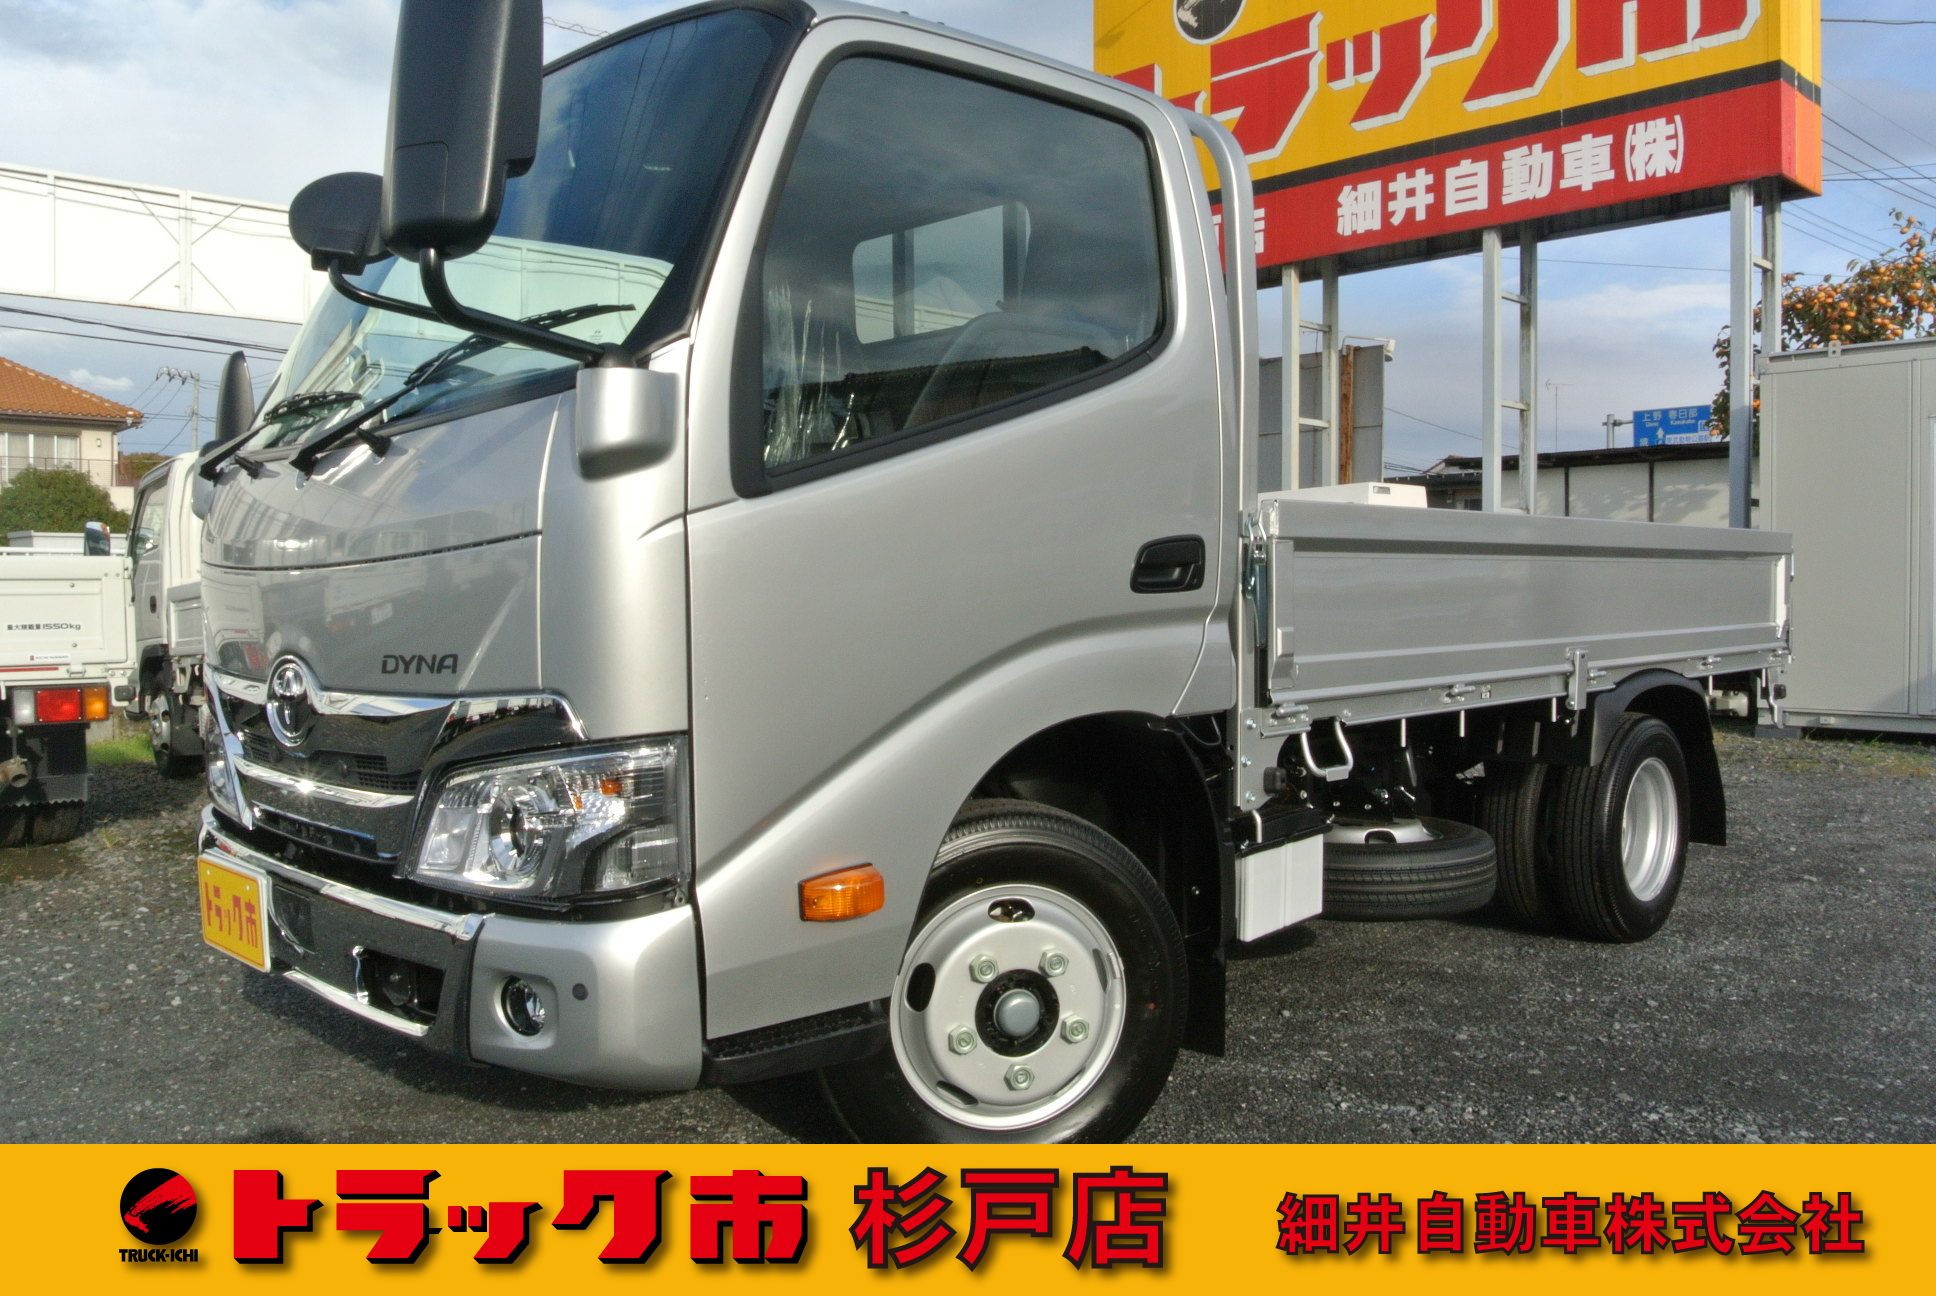 トヨタ ダイナ 2KG-XZU605(2WD)の写真1